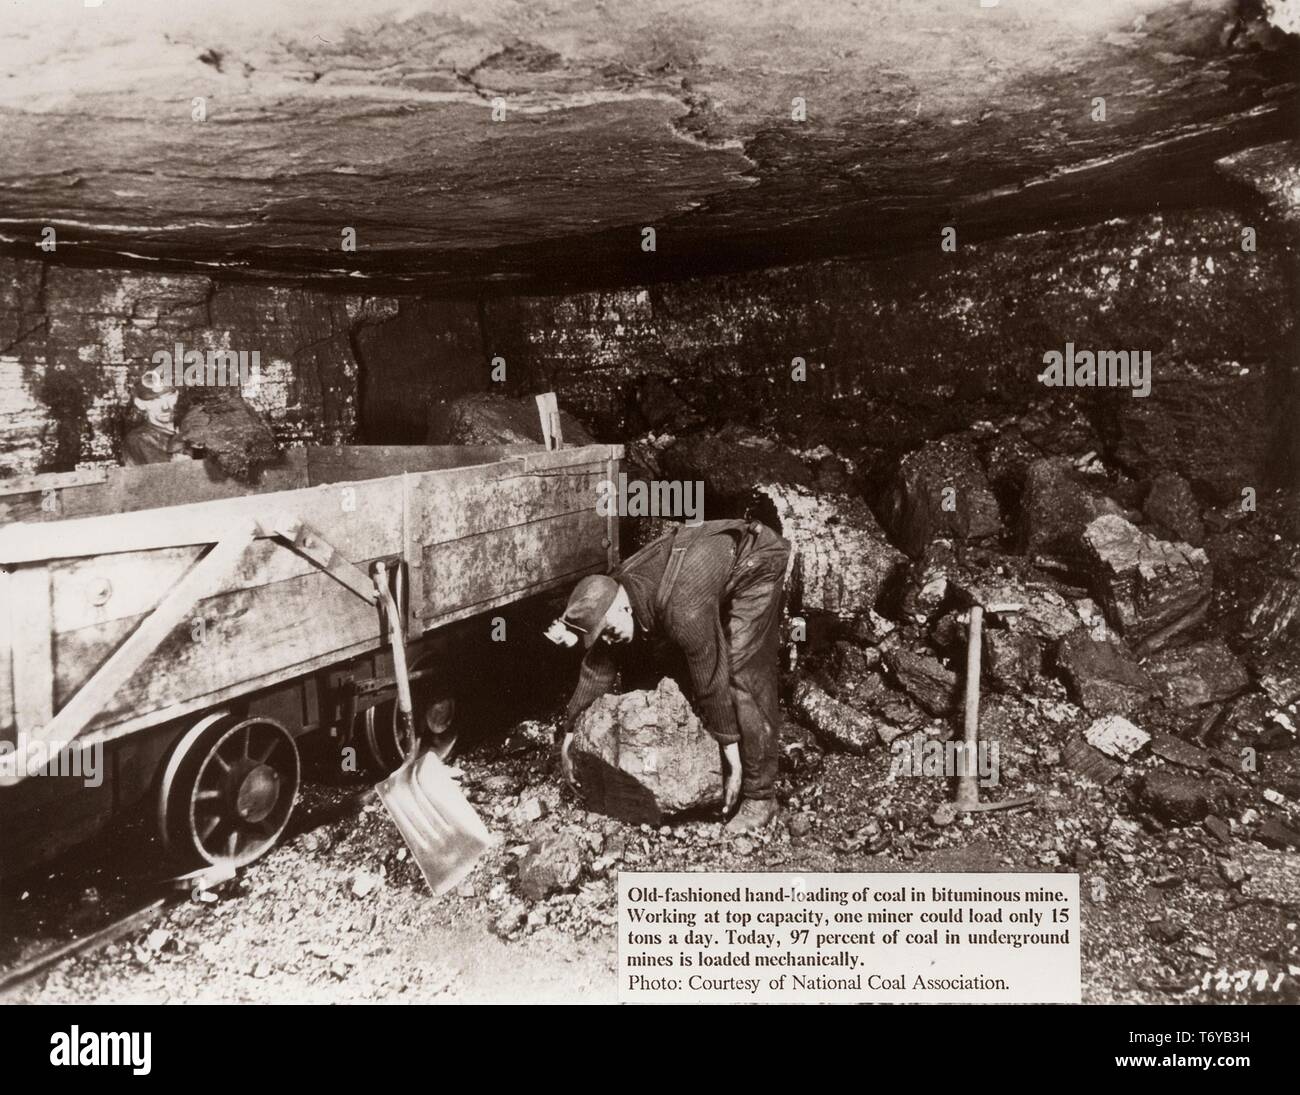 Un mineur, de travail à la fin d'un petit passage dans une mine de charbon bitumineux, se penche pour soulever un grand morceau de charbon dans un wagon, 1920. Image courtoisie National Coal Association/Département de l'énergie. () Banque D'Images